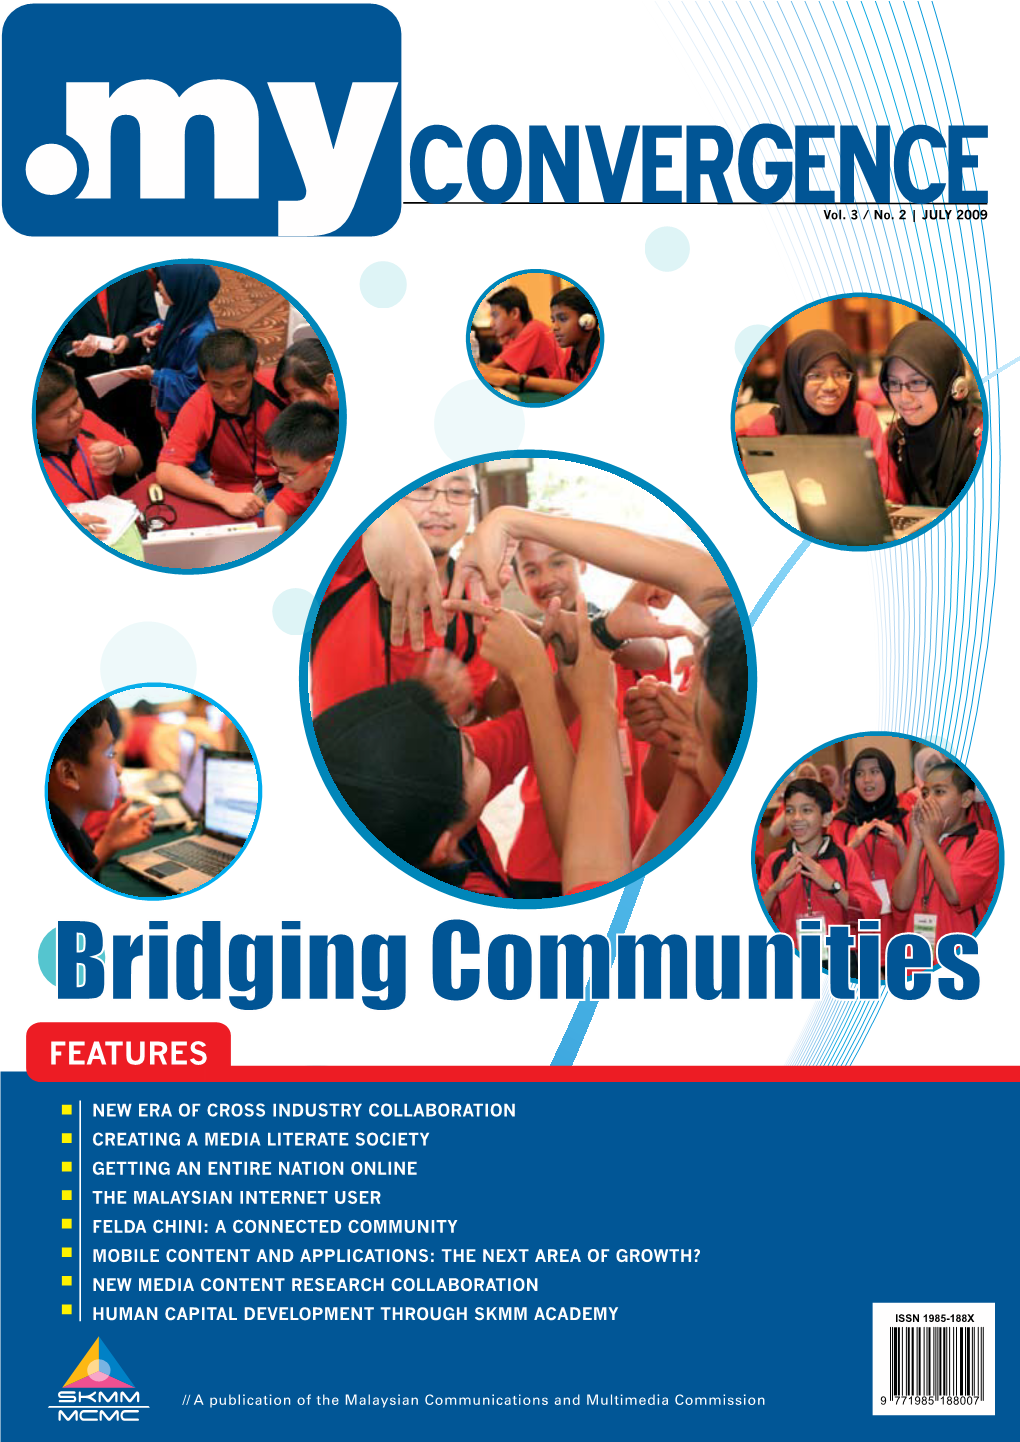 Bridging Communities FEATURES